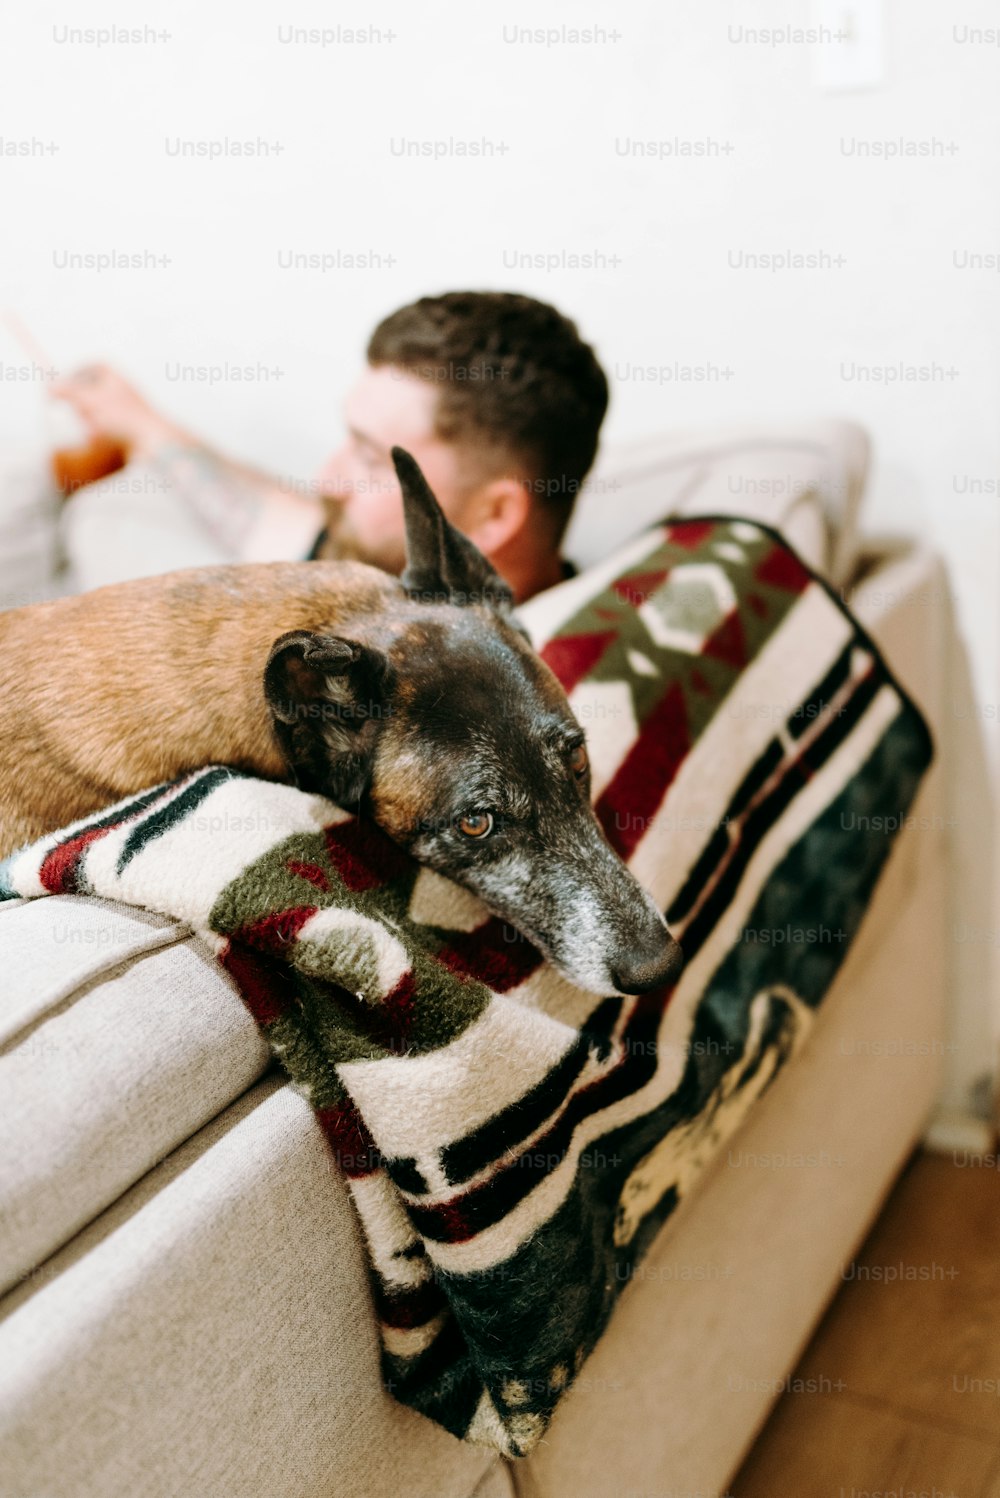 Un hombre acostado en un sofá junto a un perro